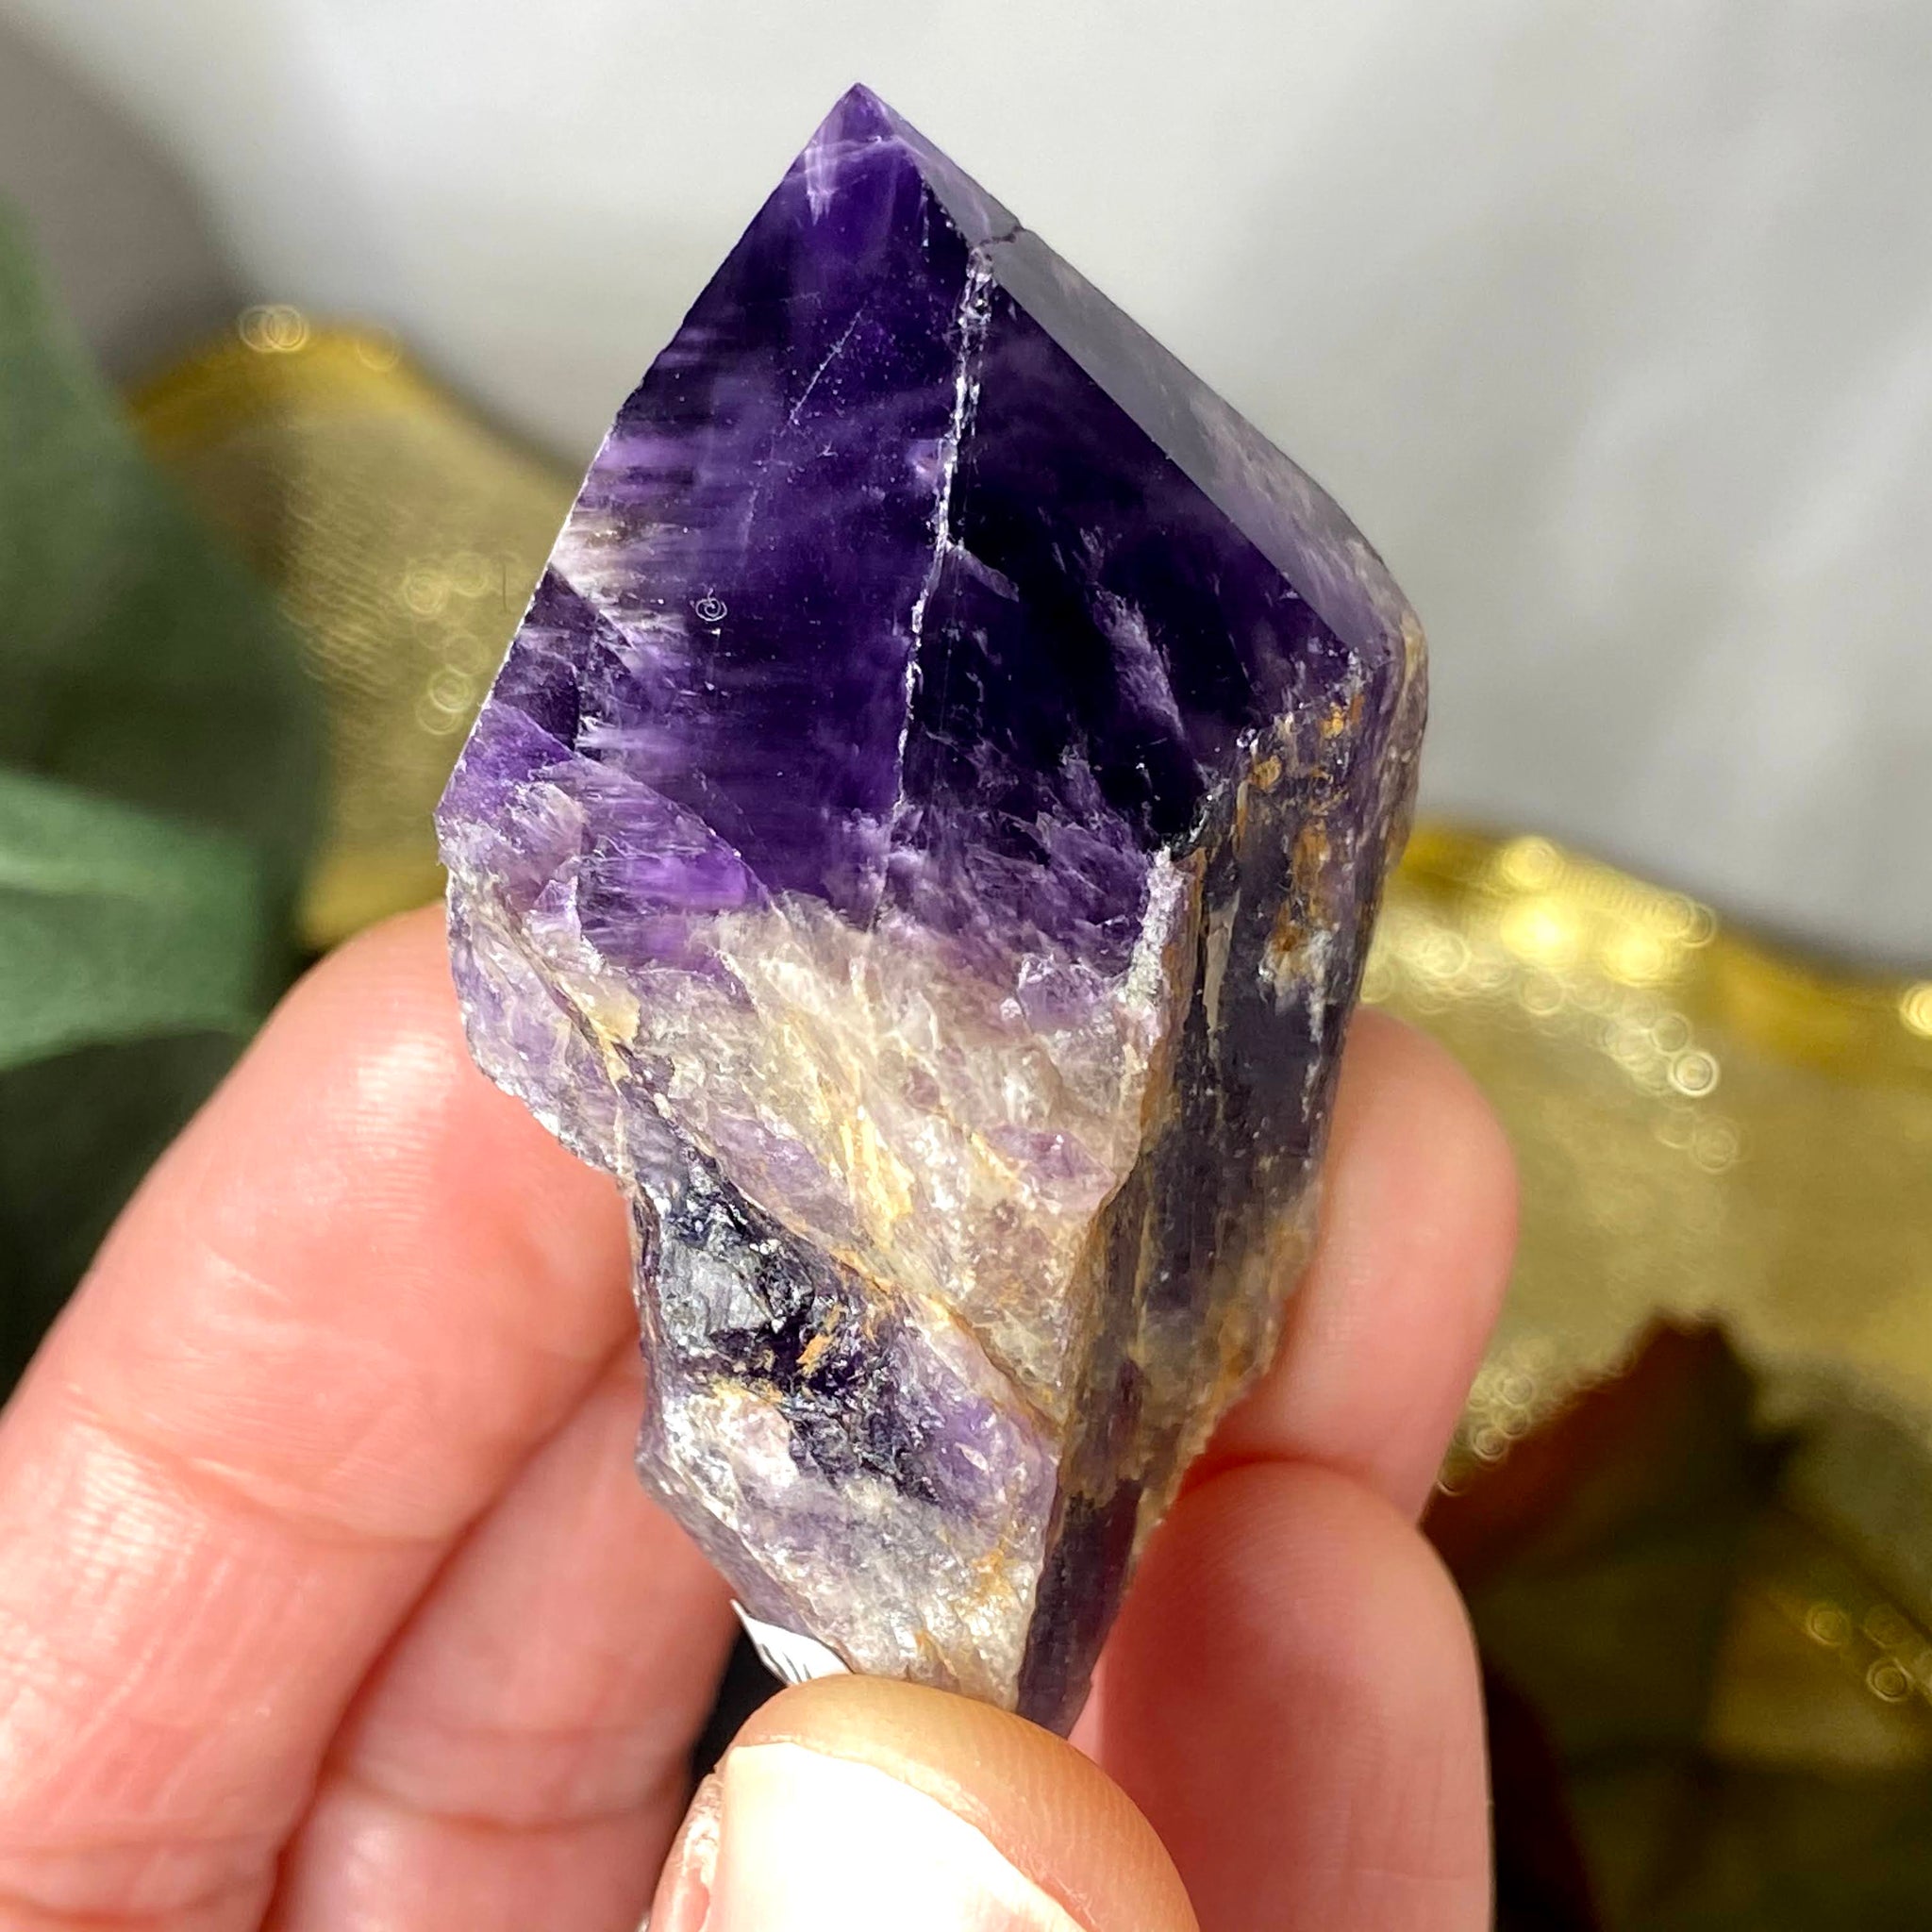 Polished Dark Amethyst Healing Crystal Points